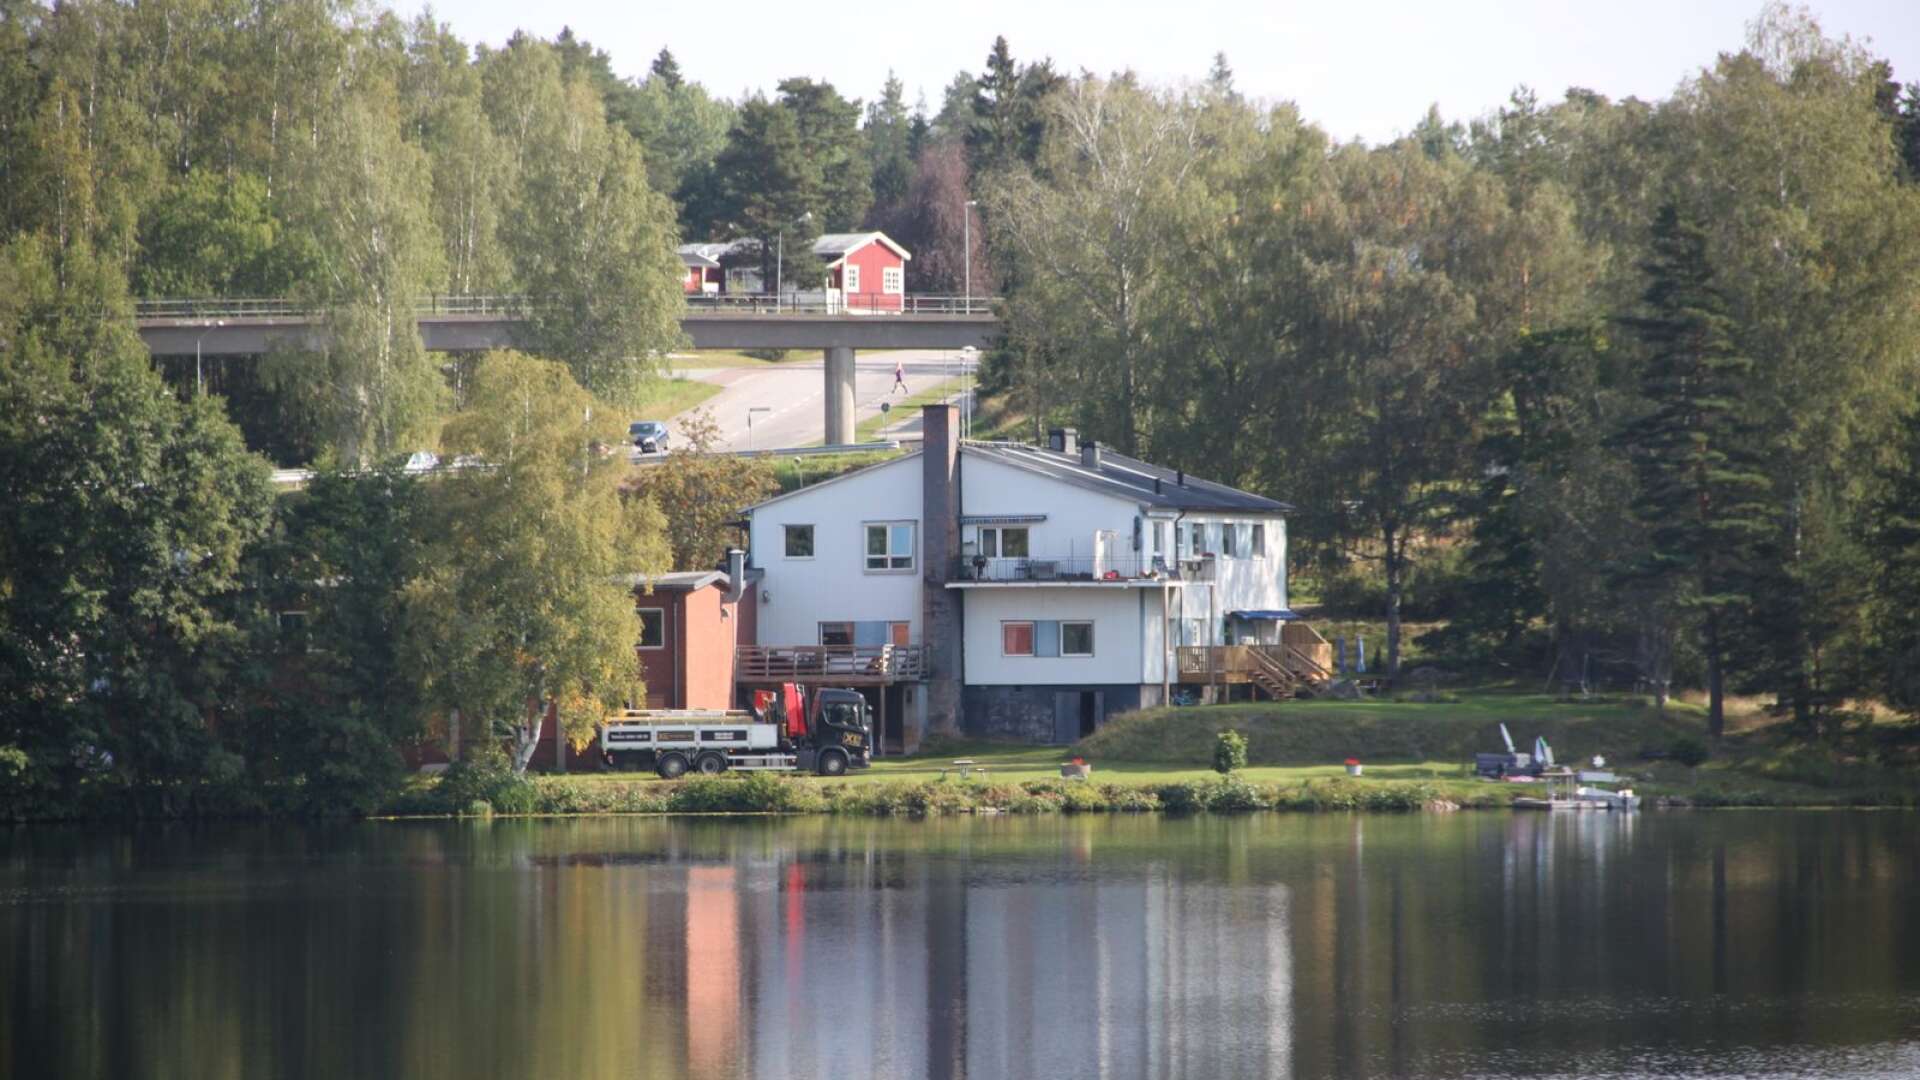 Fastigheten Möbelsnickaren 5 i Bengtsfors ska helt byggas om till bostäder. Byggnaden ligger precis vid Bengtsbrohöljens strand, och framför huset blir det en brygga i vattnet.